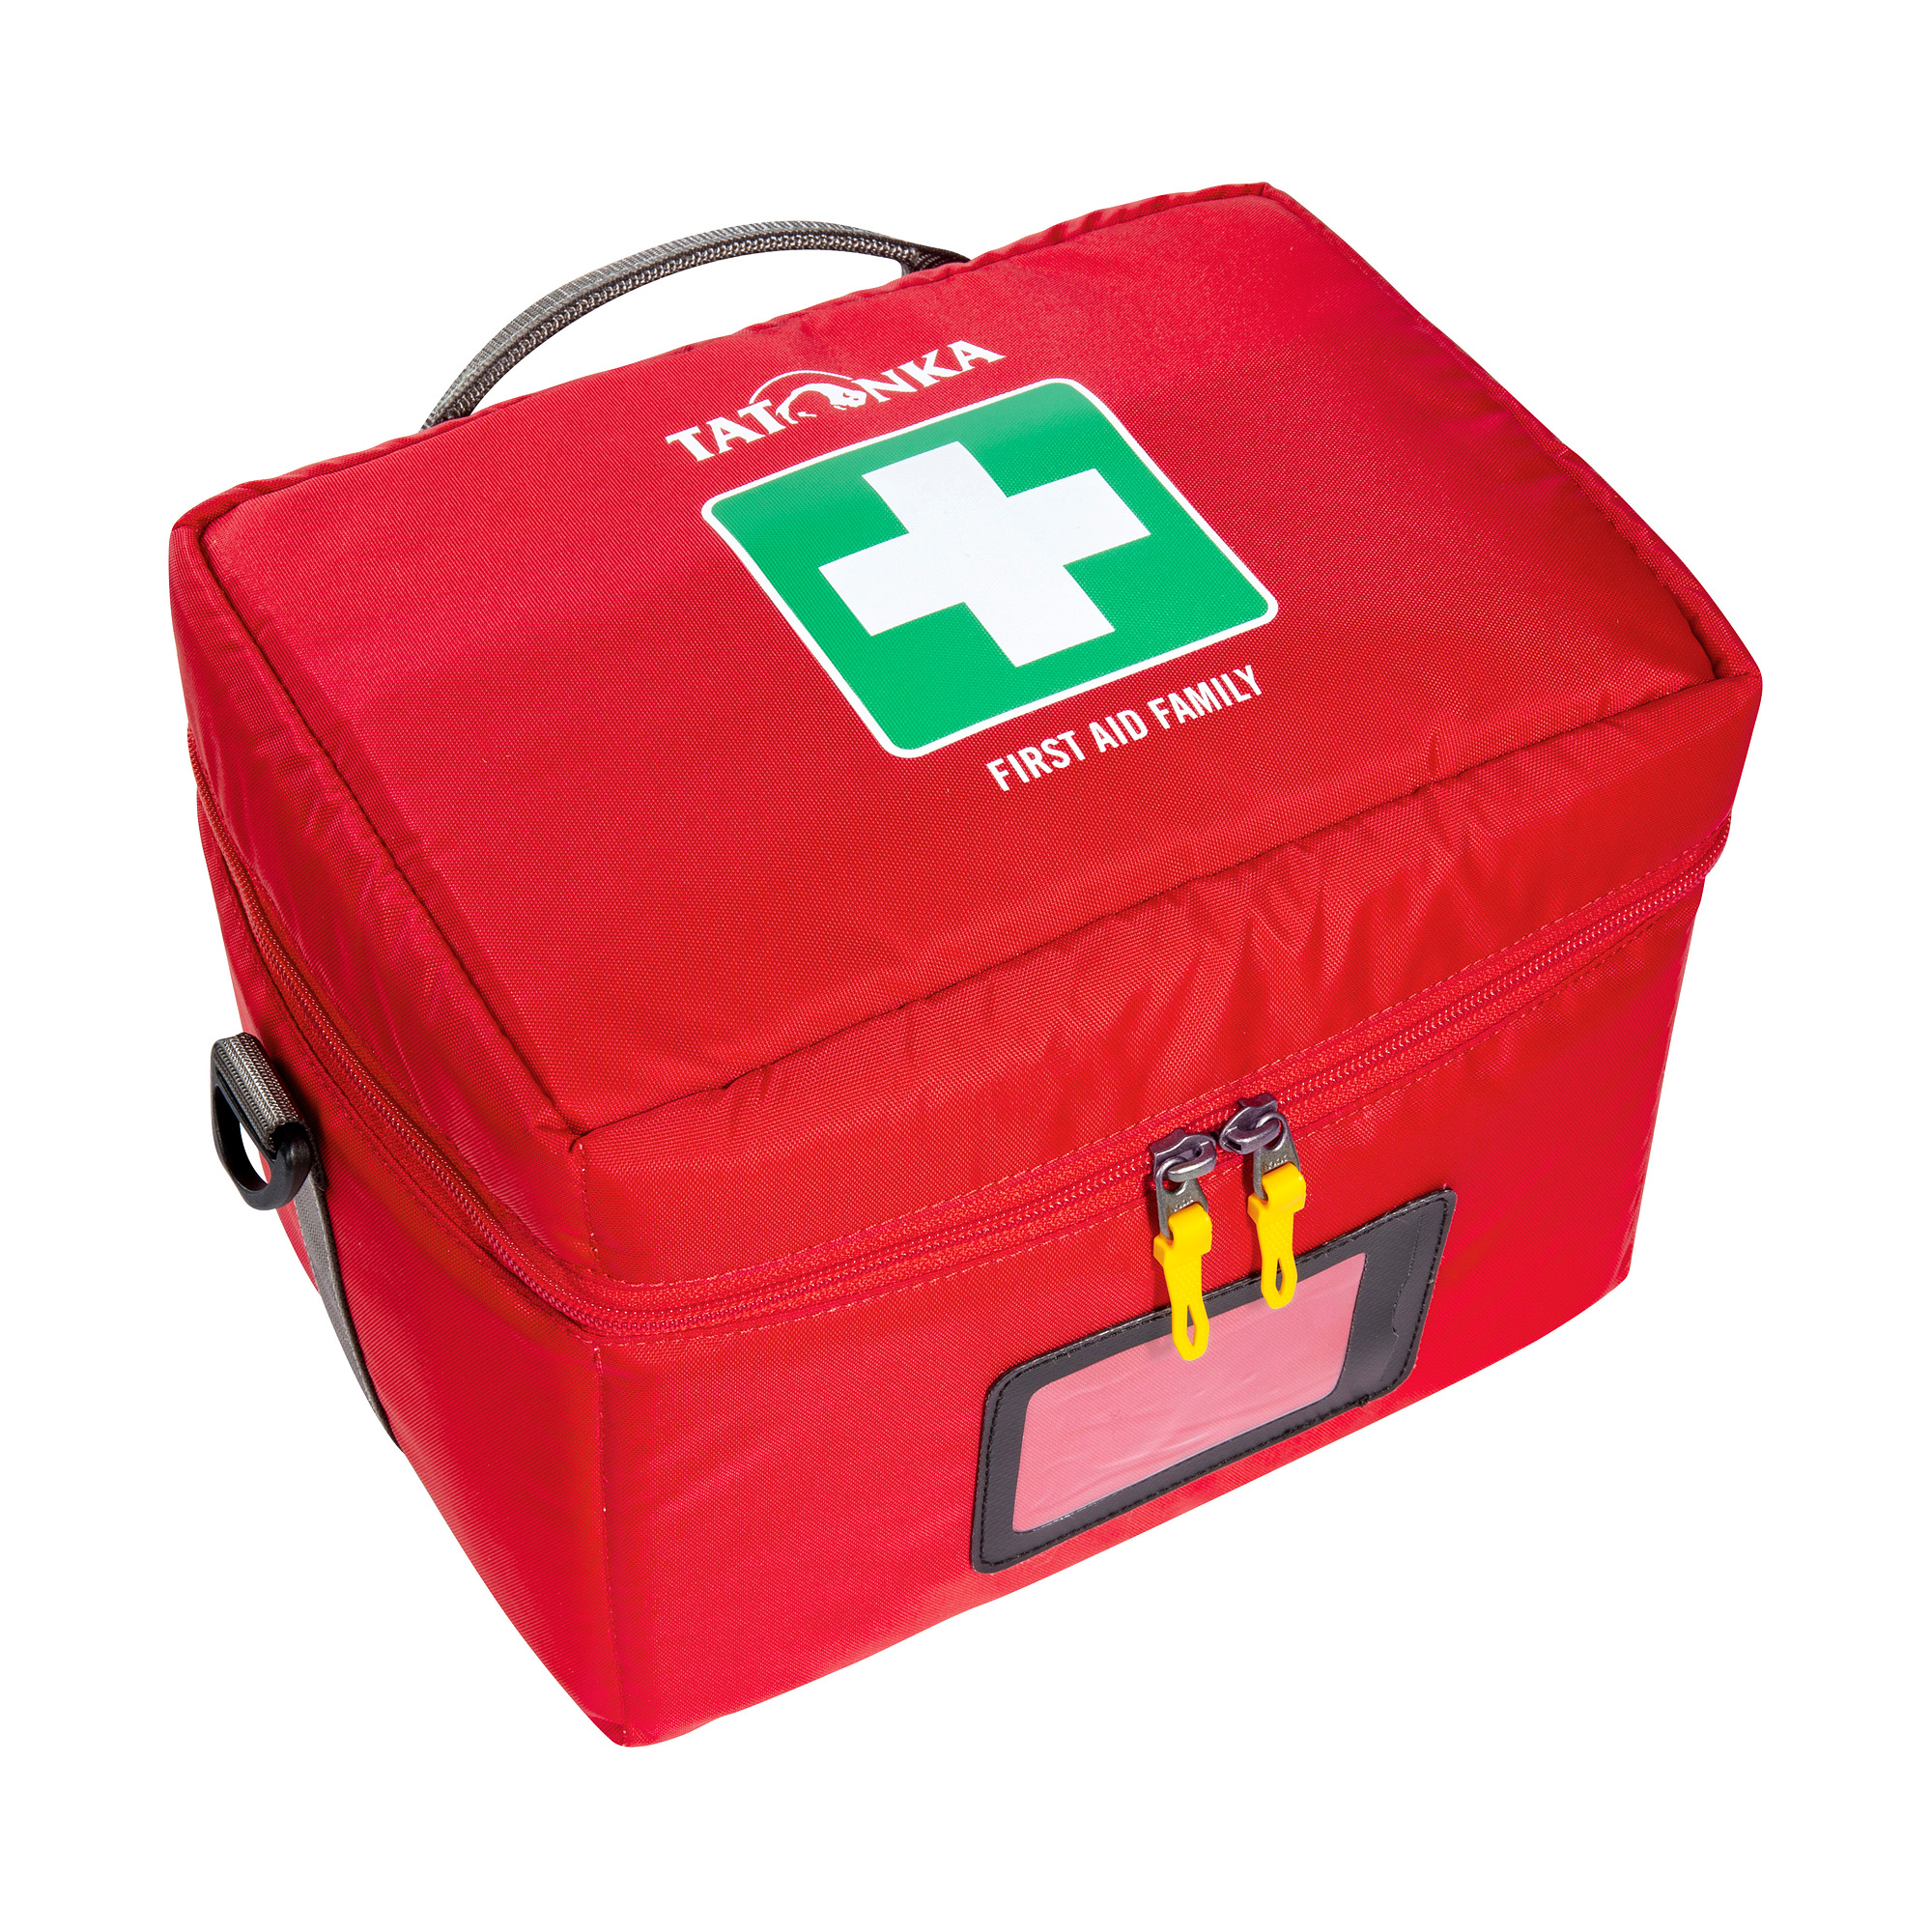 Tatonka First Aid M - Erste-Hilfe Tasche online kaufen